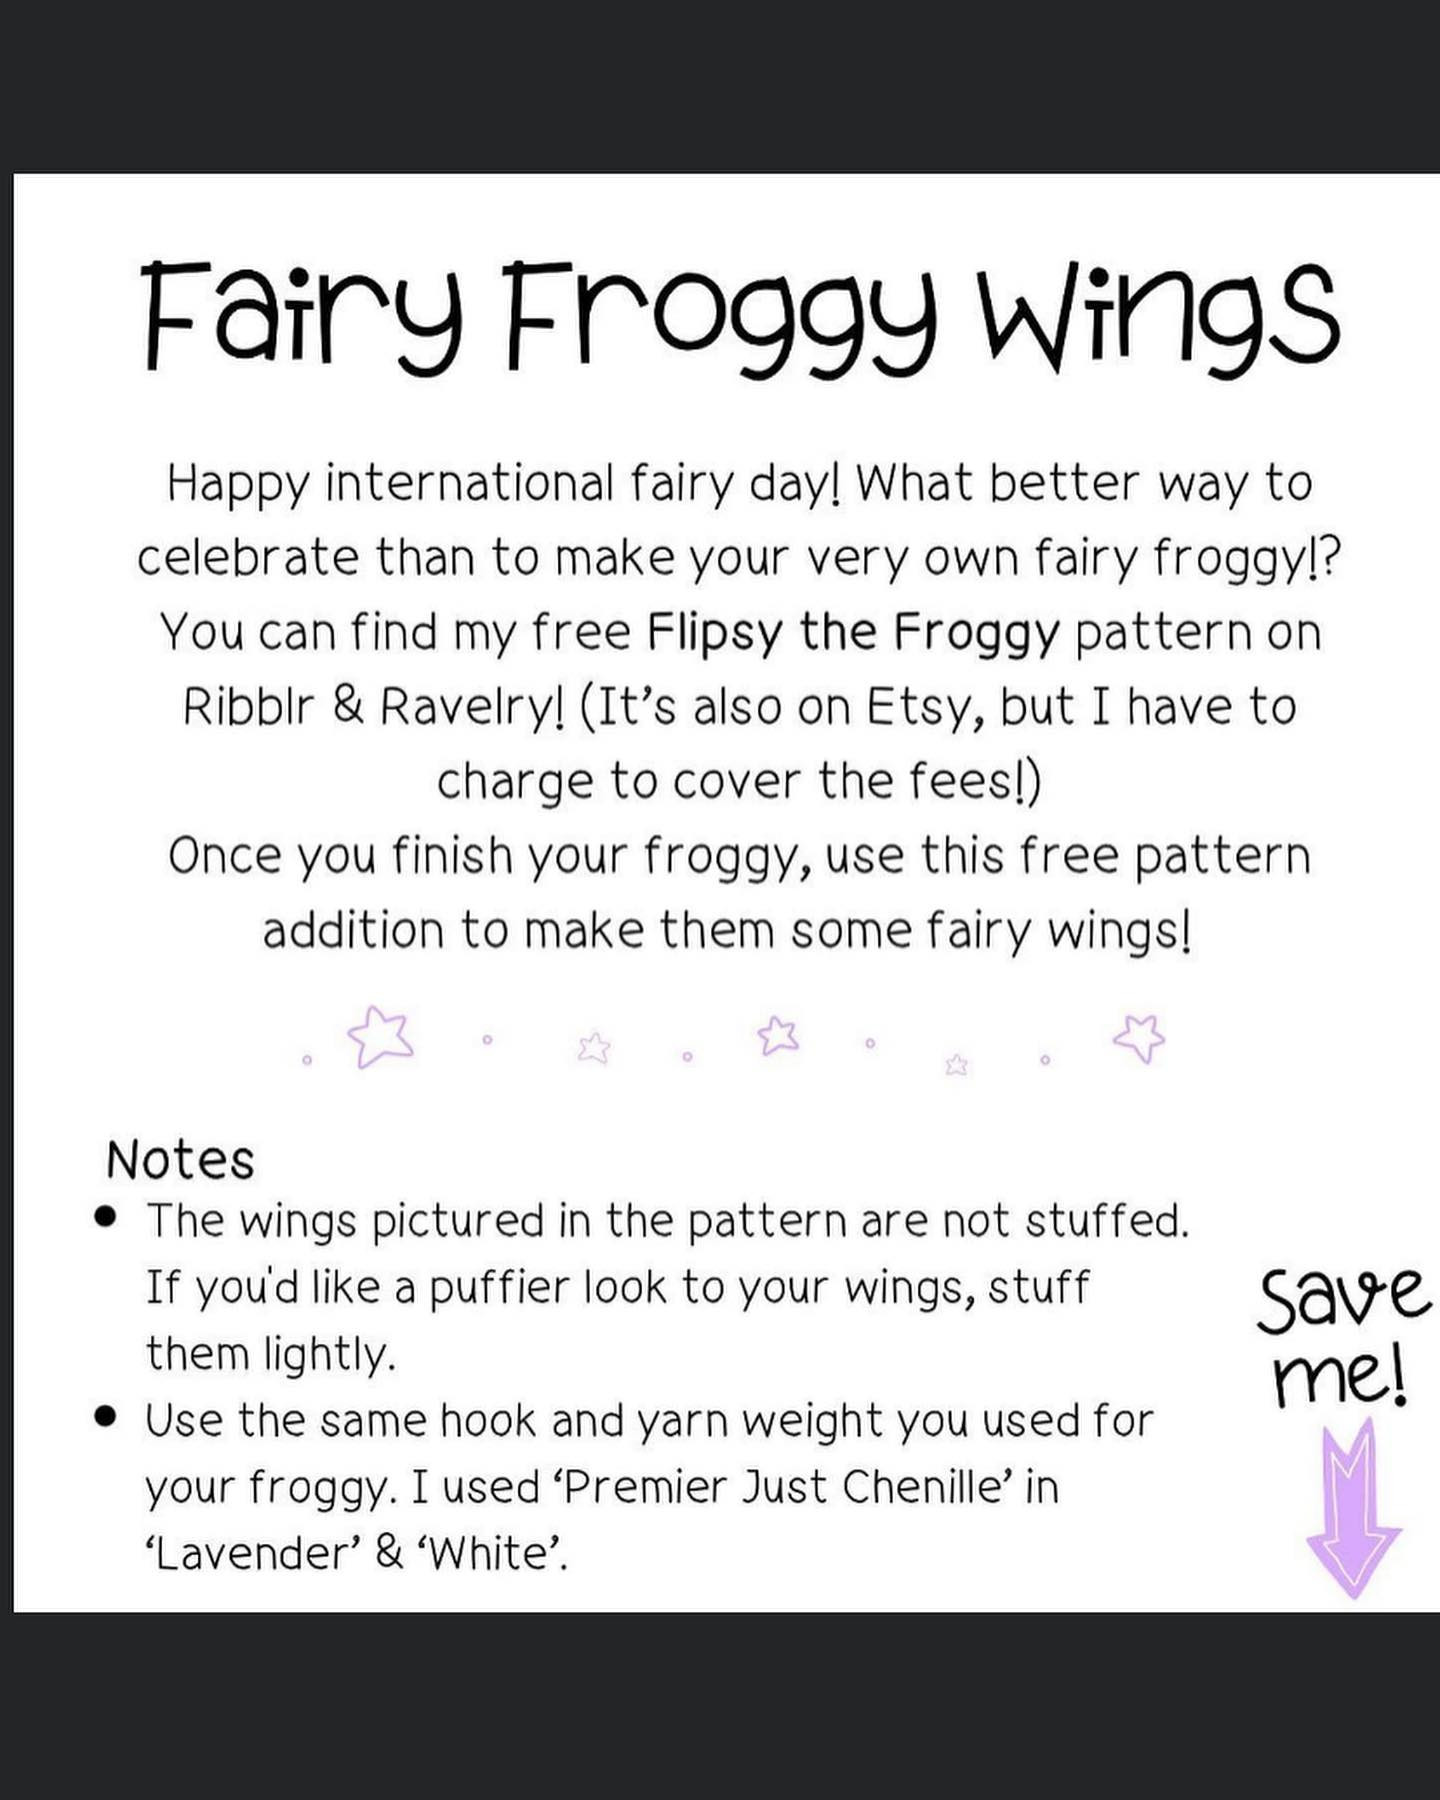 fairy froggy wings, for flipsy the froggy crochet pattern